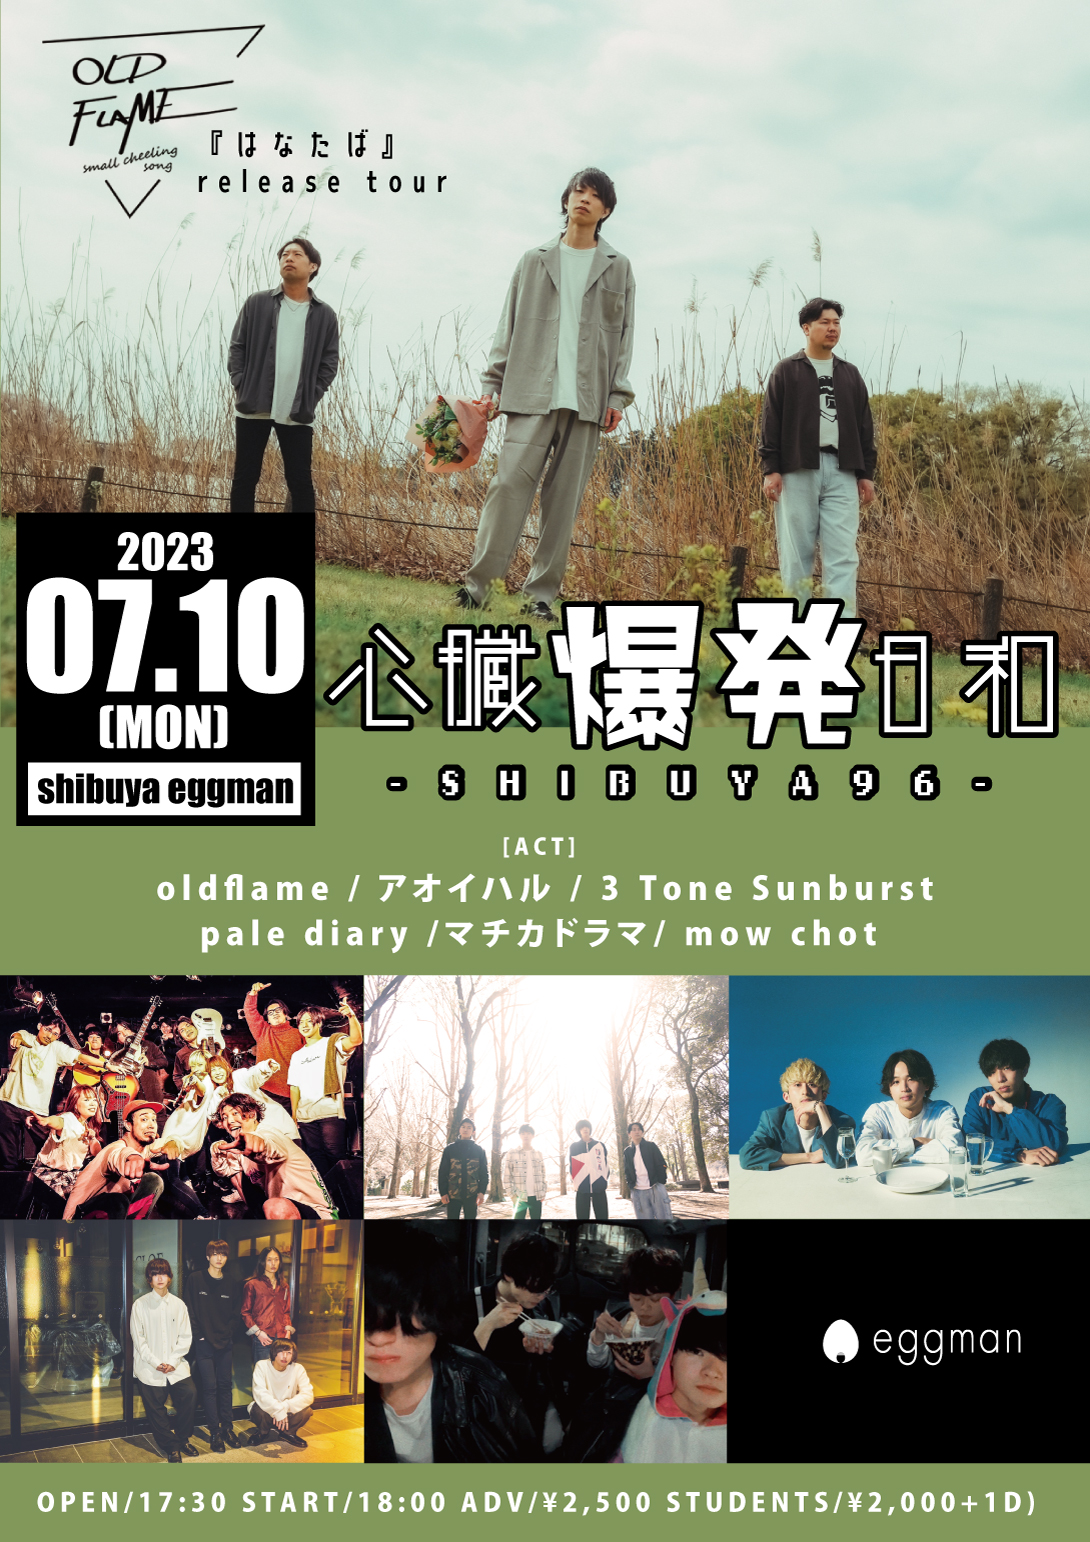 心臓爆発日和-SHIBUYA96- 〜oldflame 『はなたば』 release tour〜